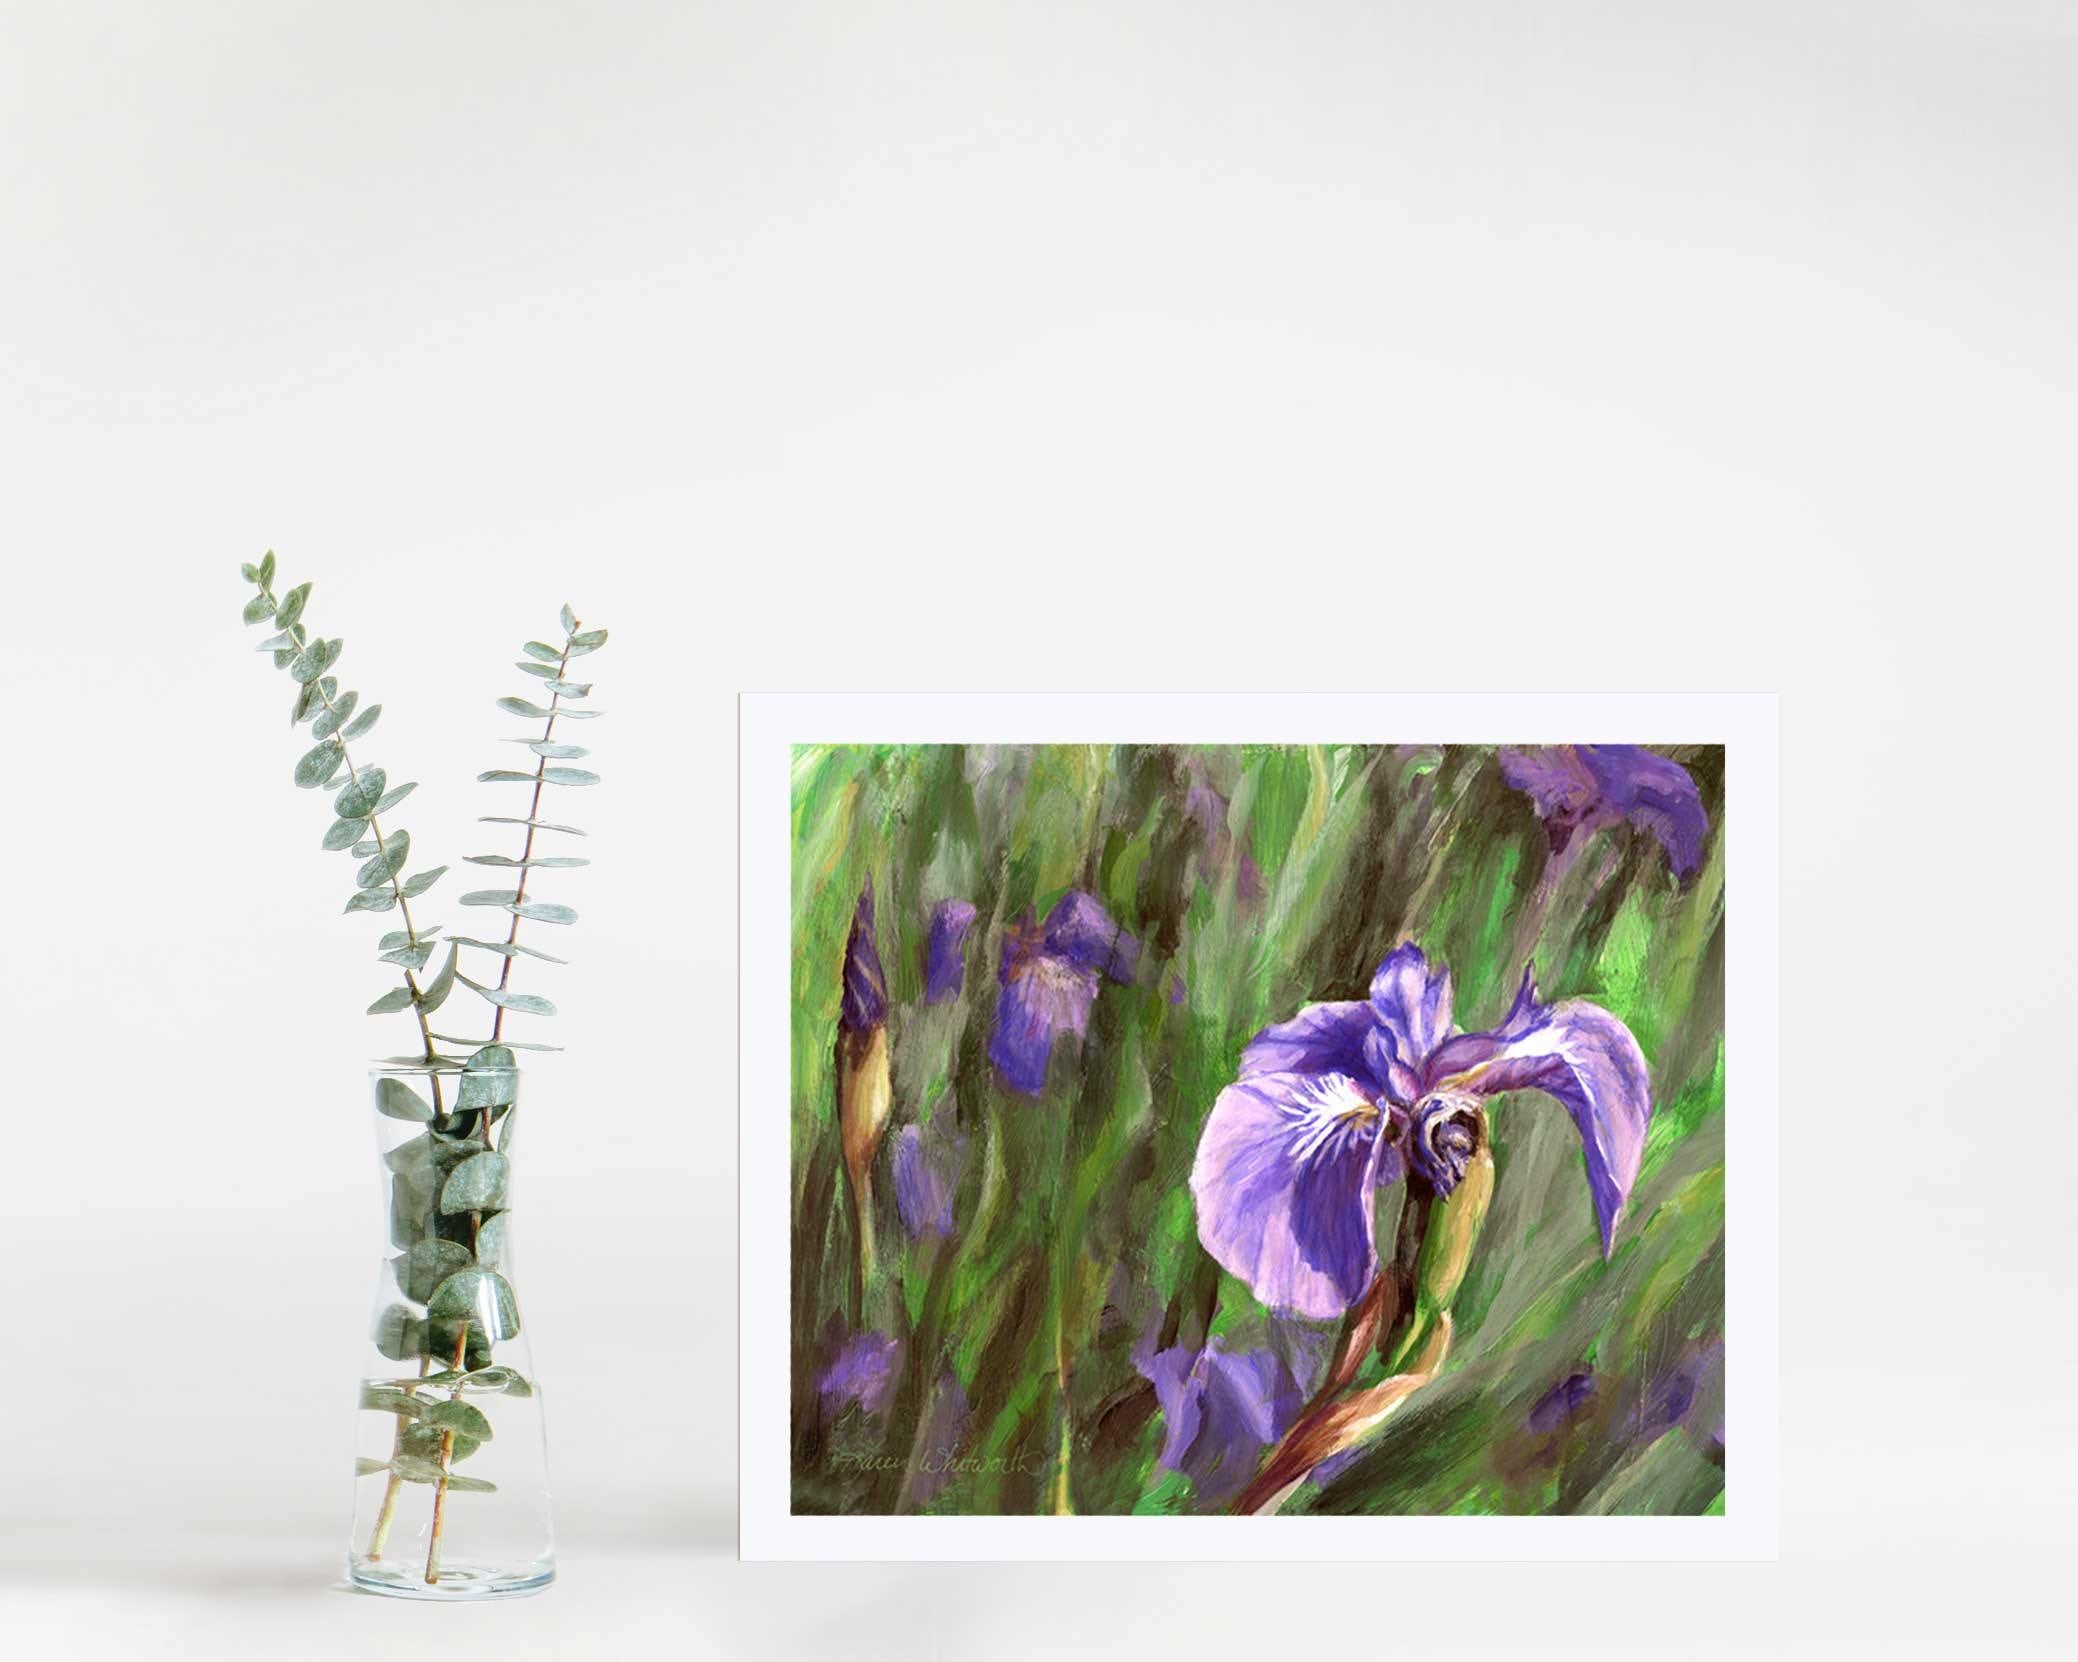 8x10 Paper wall art print of Alaskan wild iris flower by artist Karen Whitworth